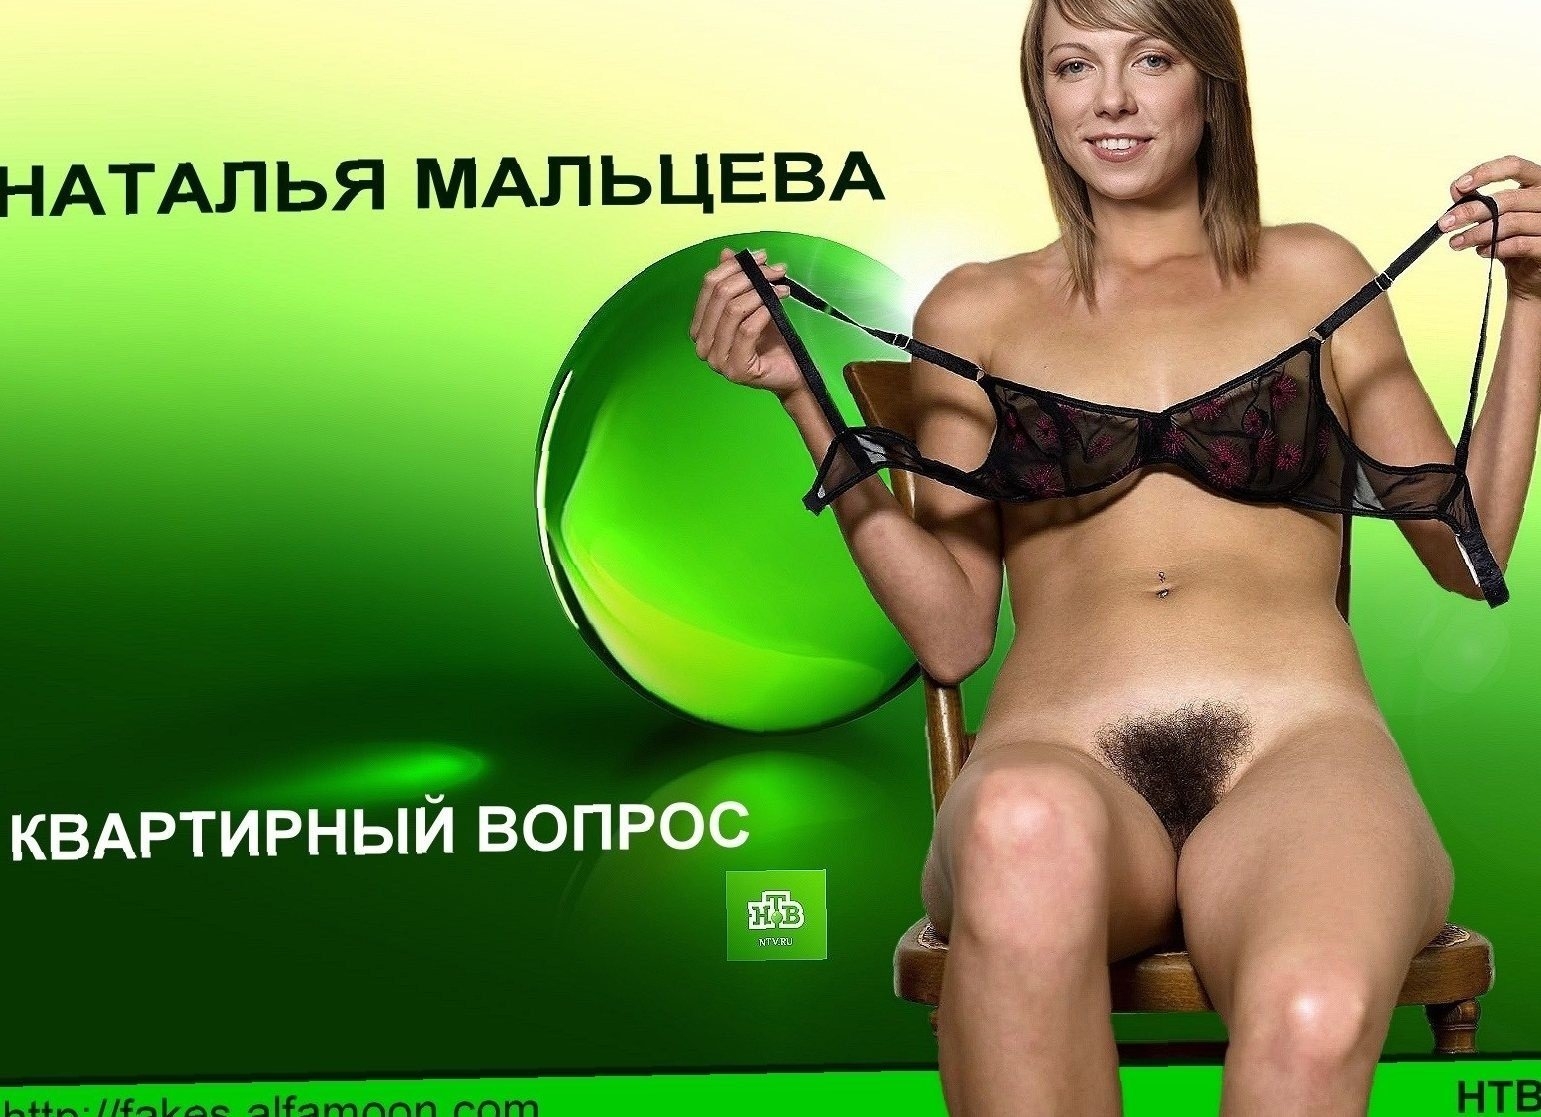 Порно Фото Русских Ведущих И Актрис Все